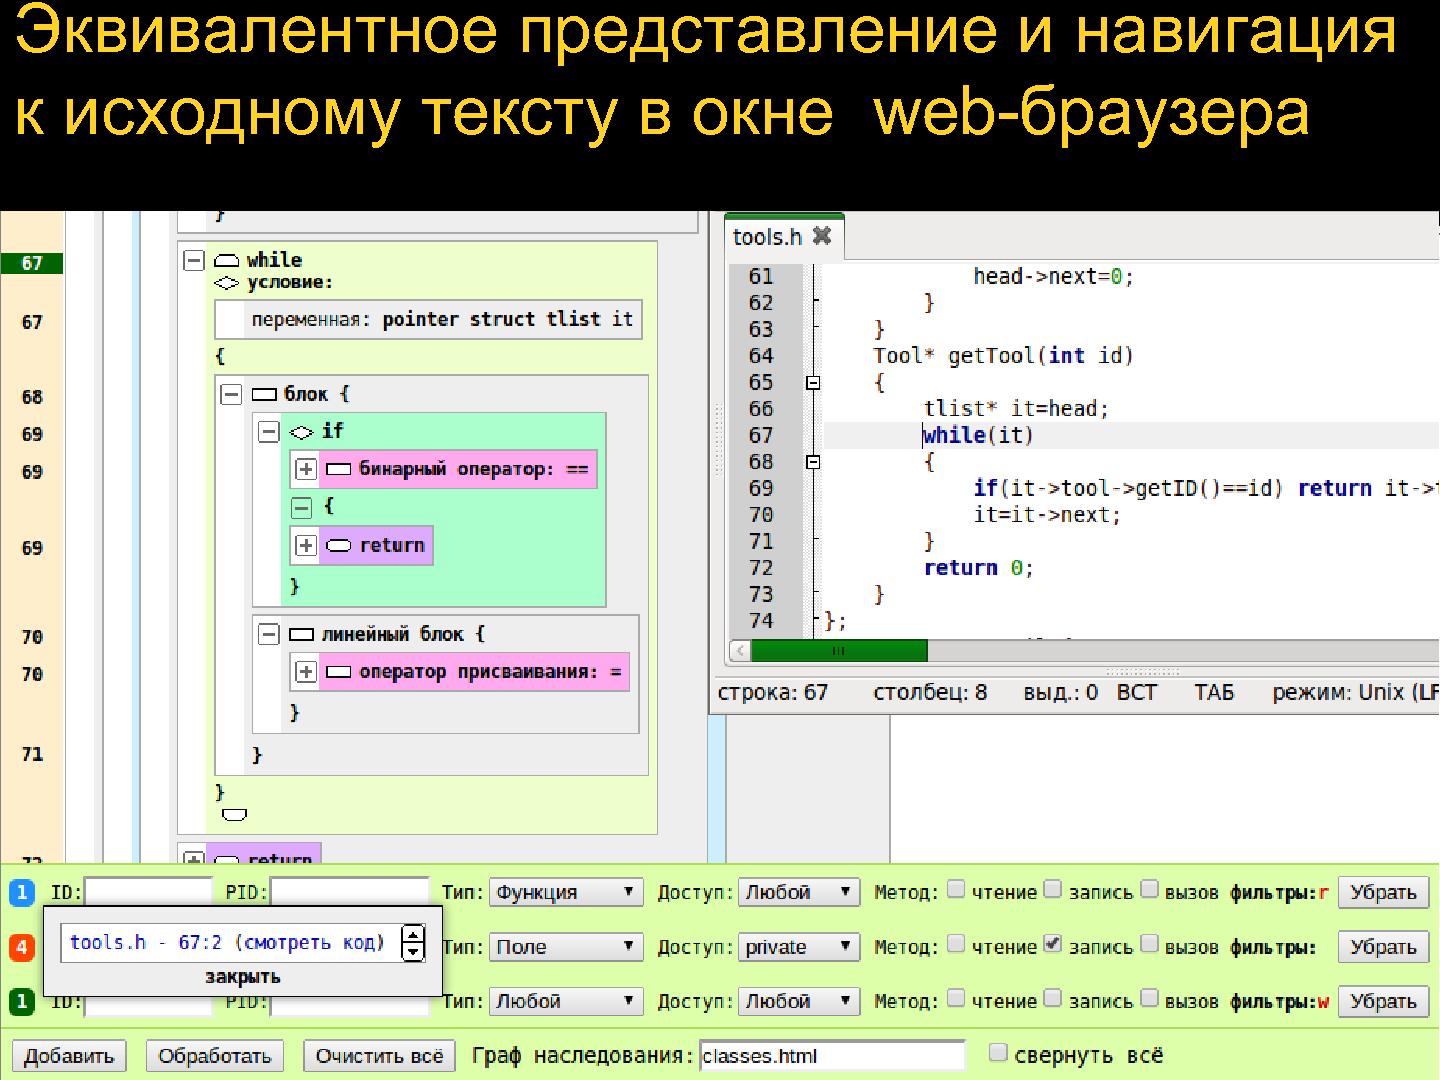 Файл:Прототип инструмента для анализа графа потока управления открытых исходных текстов С++.pdf